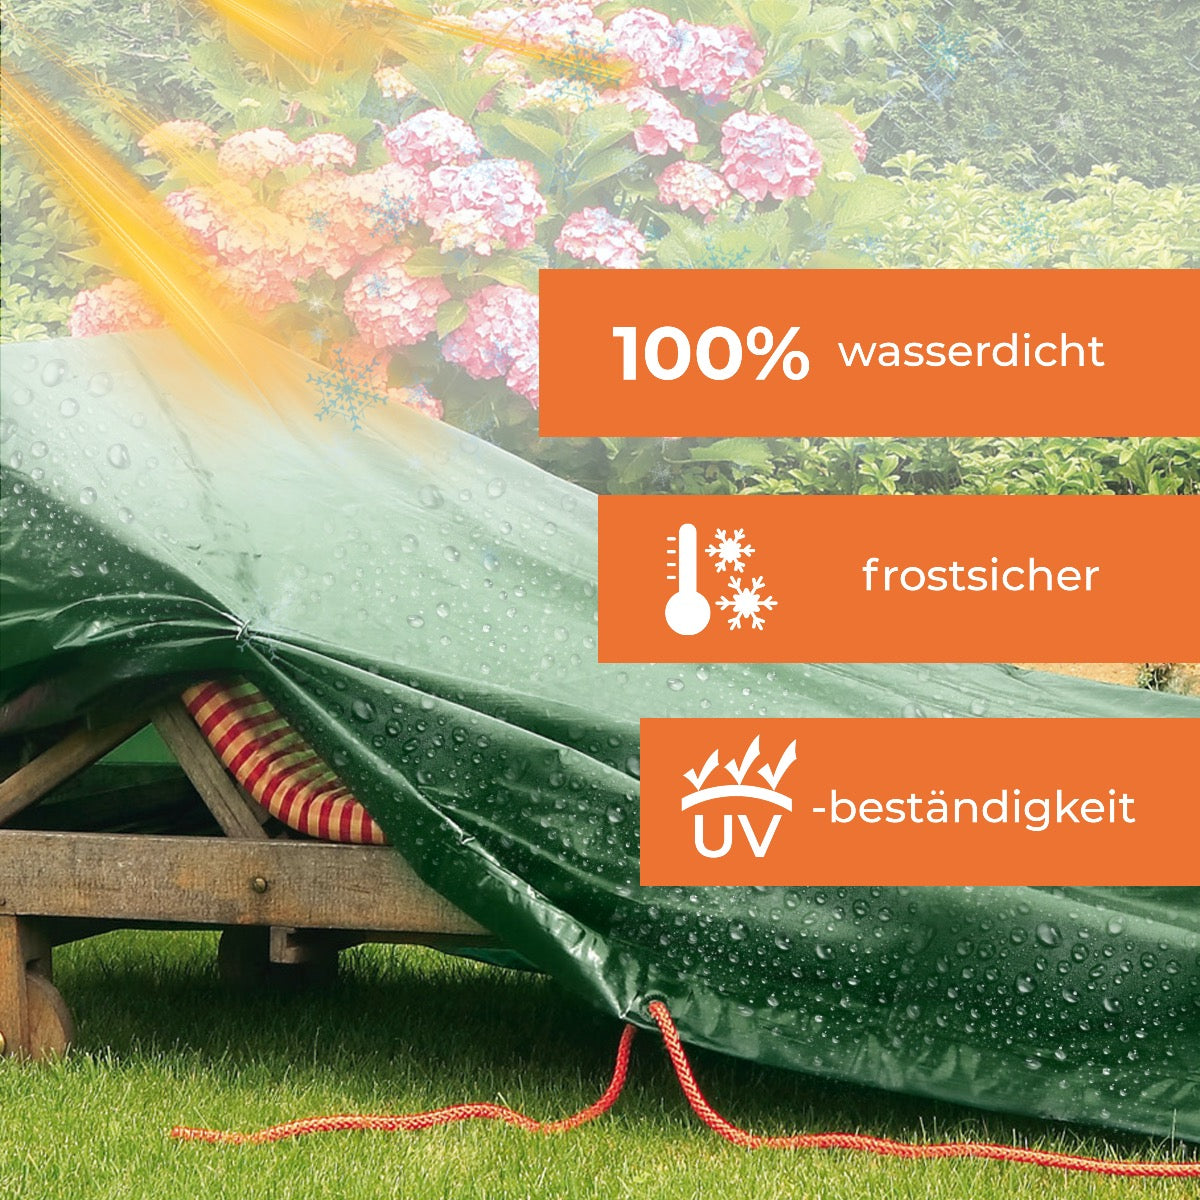 Rainexo Abdeckhaube für Gartenliege - 100% wasserdicht, frostsicher und UV-beständig - grün